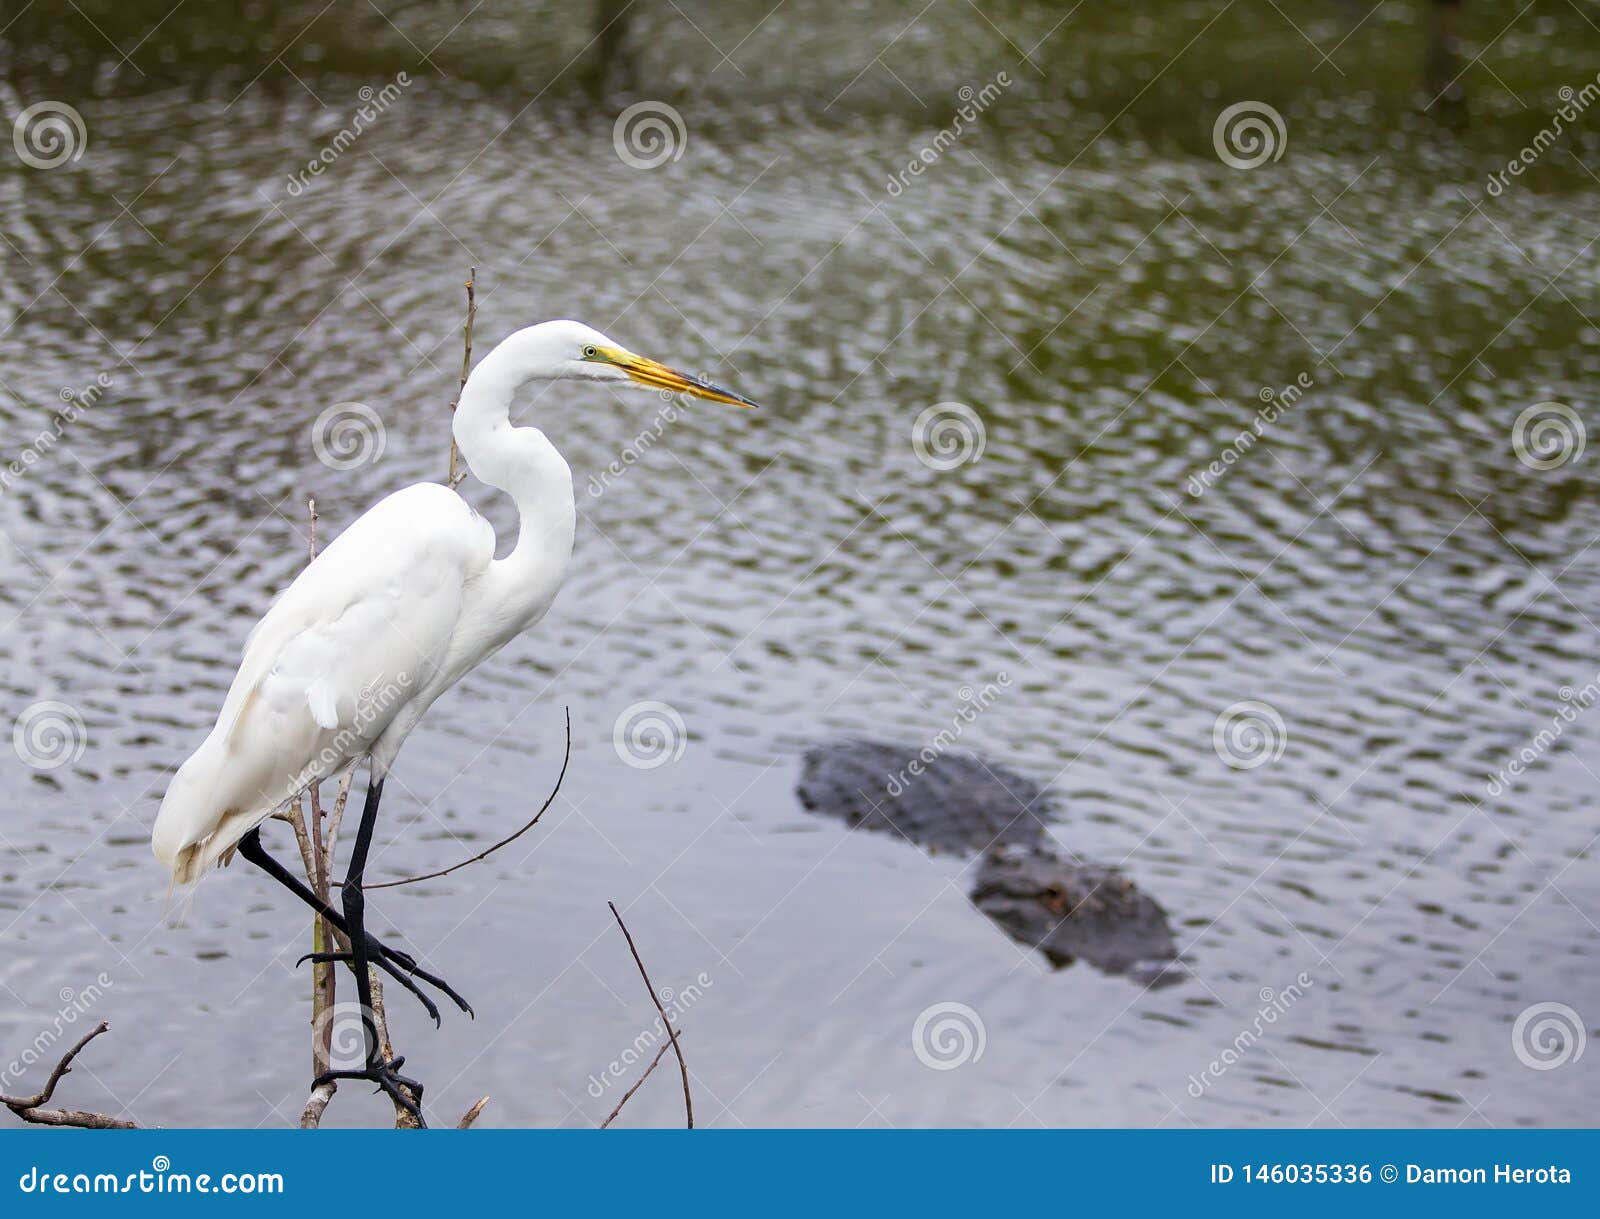 white florida heron near the water next to gator